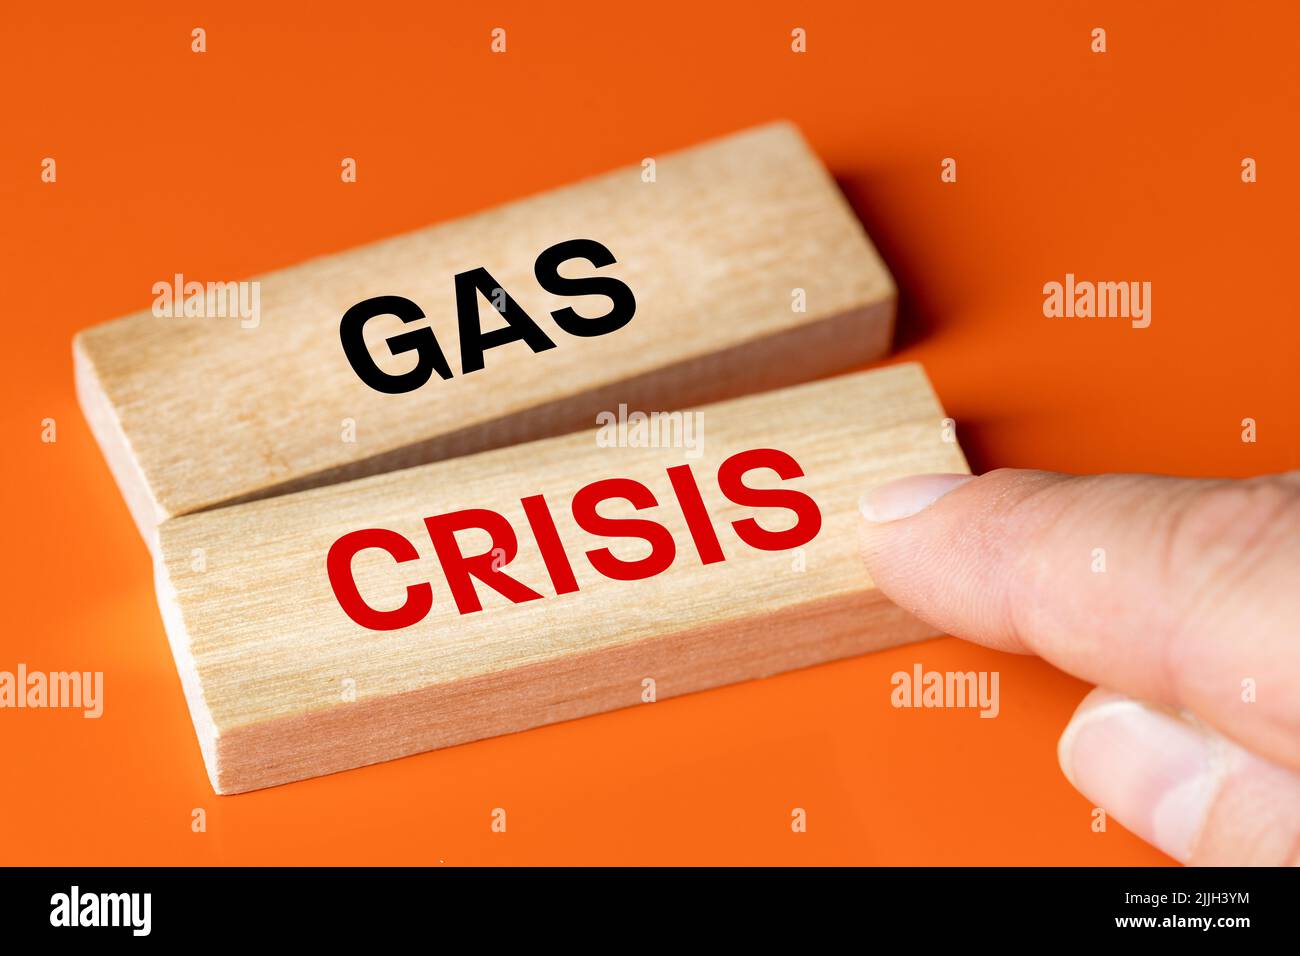 Crisi del gas, testo che mostra le dita su un blocco di legno, sfondo arancione, concetto della crisi energetica europea e la necessità di ridurre i consumi Foto Stock